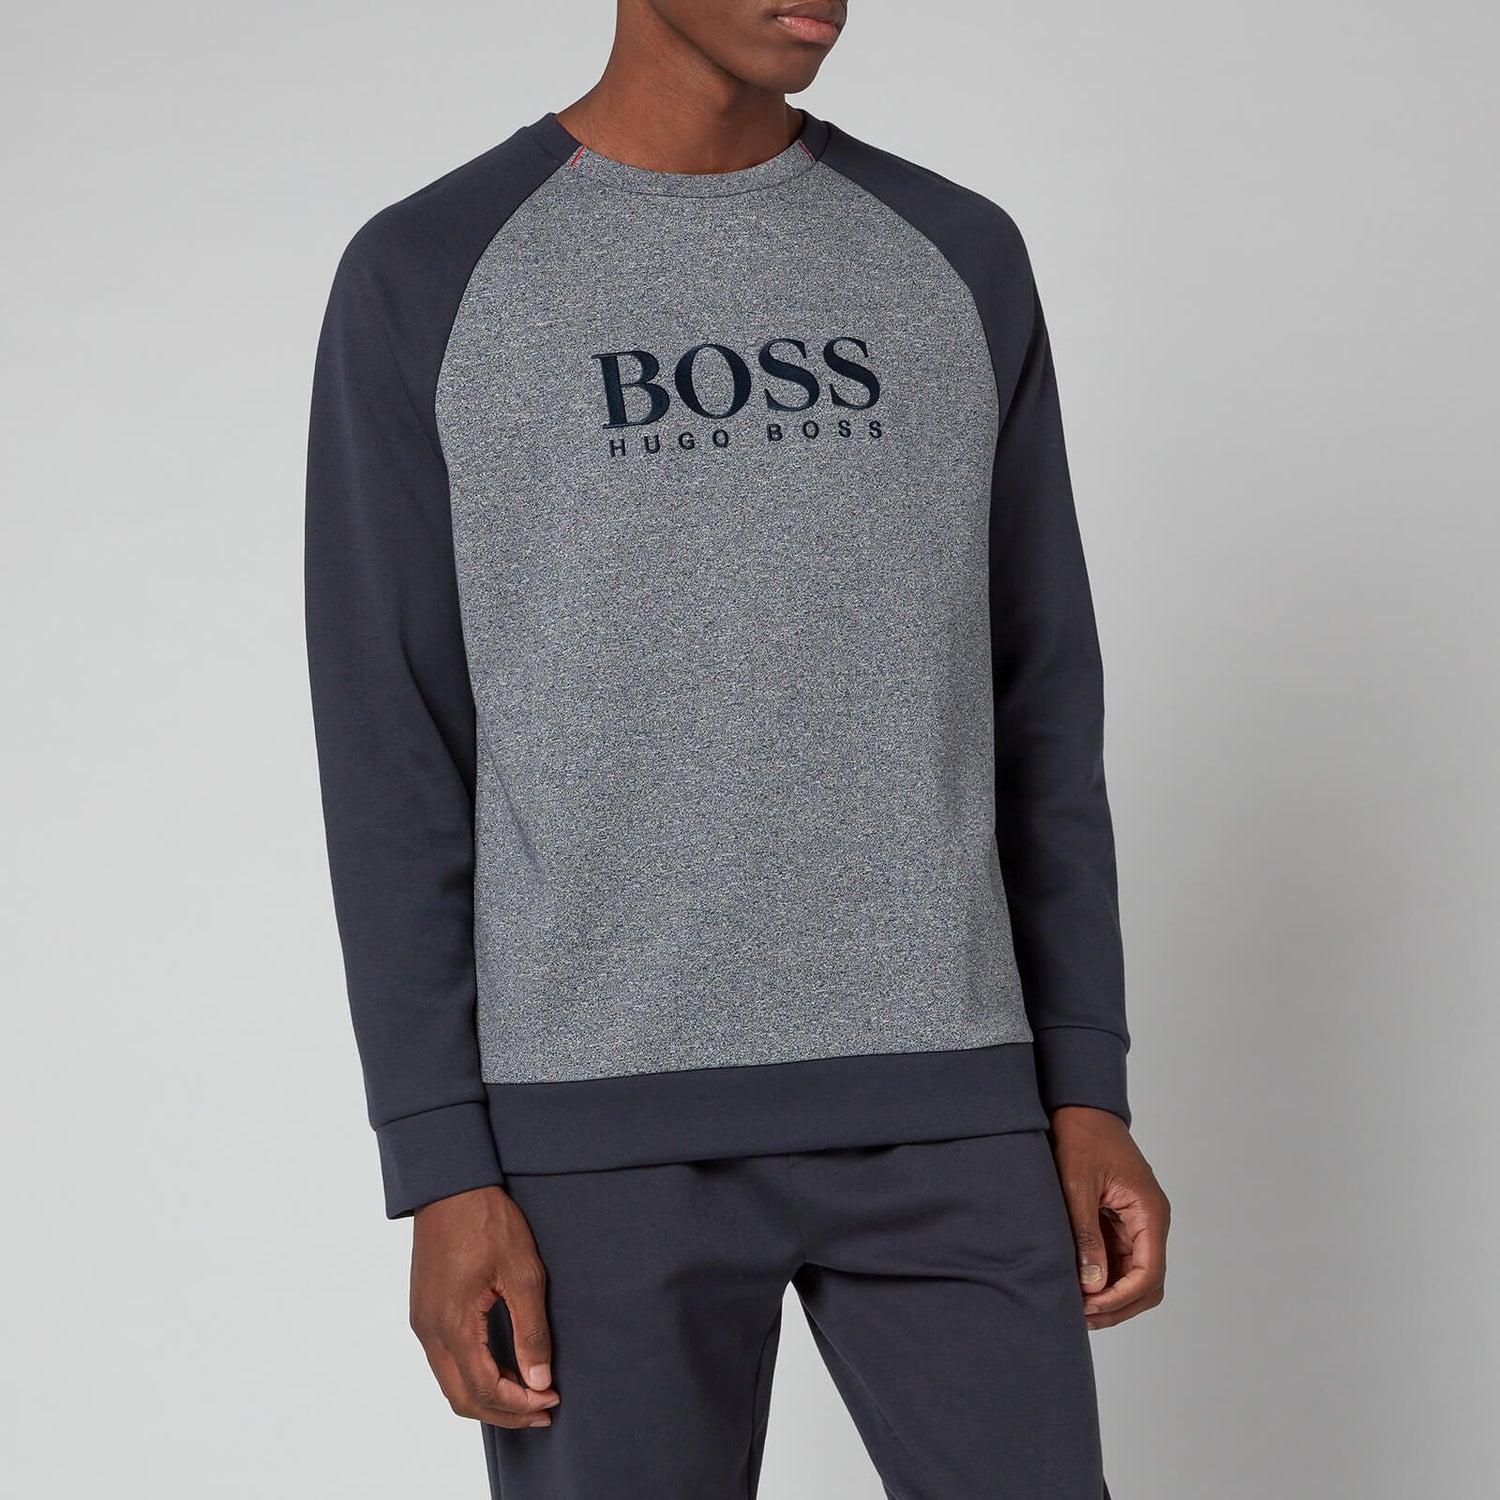 BOSS Bodywear Men's Contemporary Sweatshirt - Dark Blue